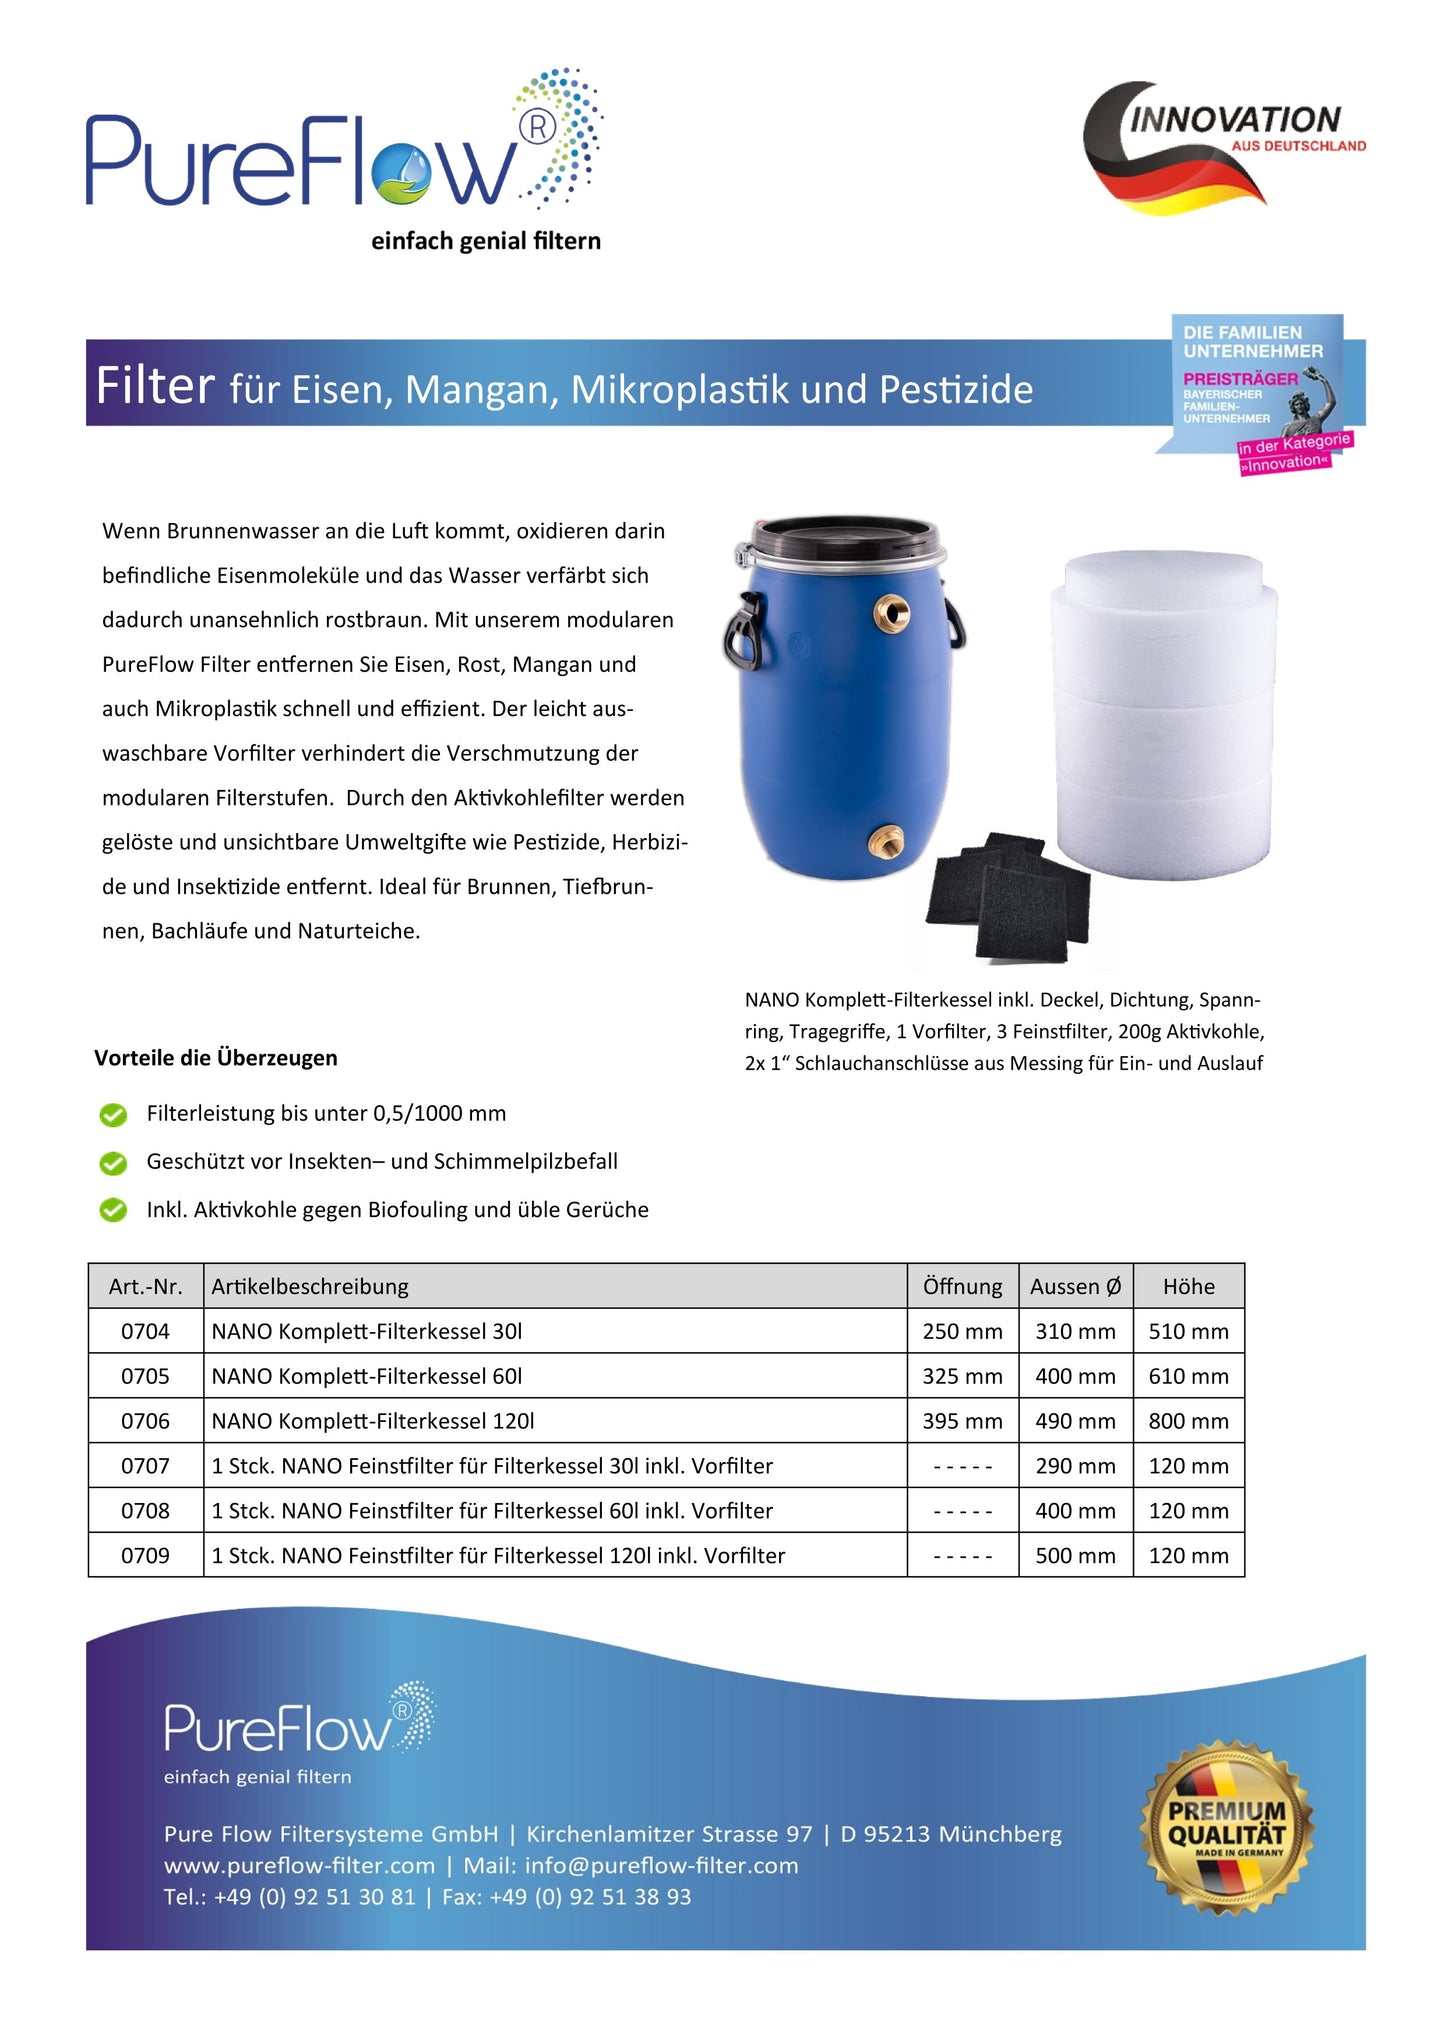 PureFlow NANOFILTER. Filter für Brunnenwasser. Verhindert die Verschmutzung durch Rost, Mangan und Mikroplastik. Gegen Geruchsbildung durch Biofouling.